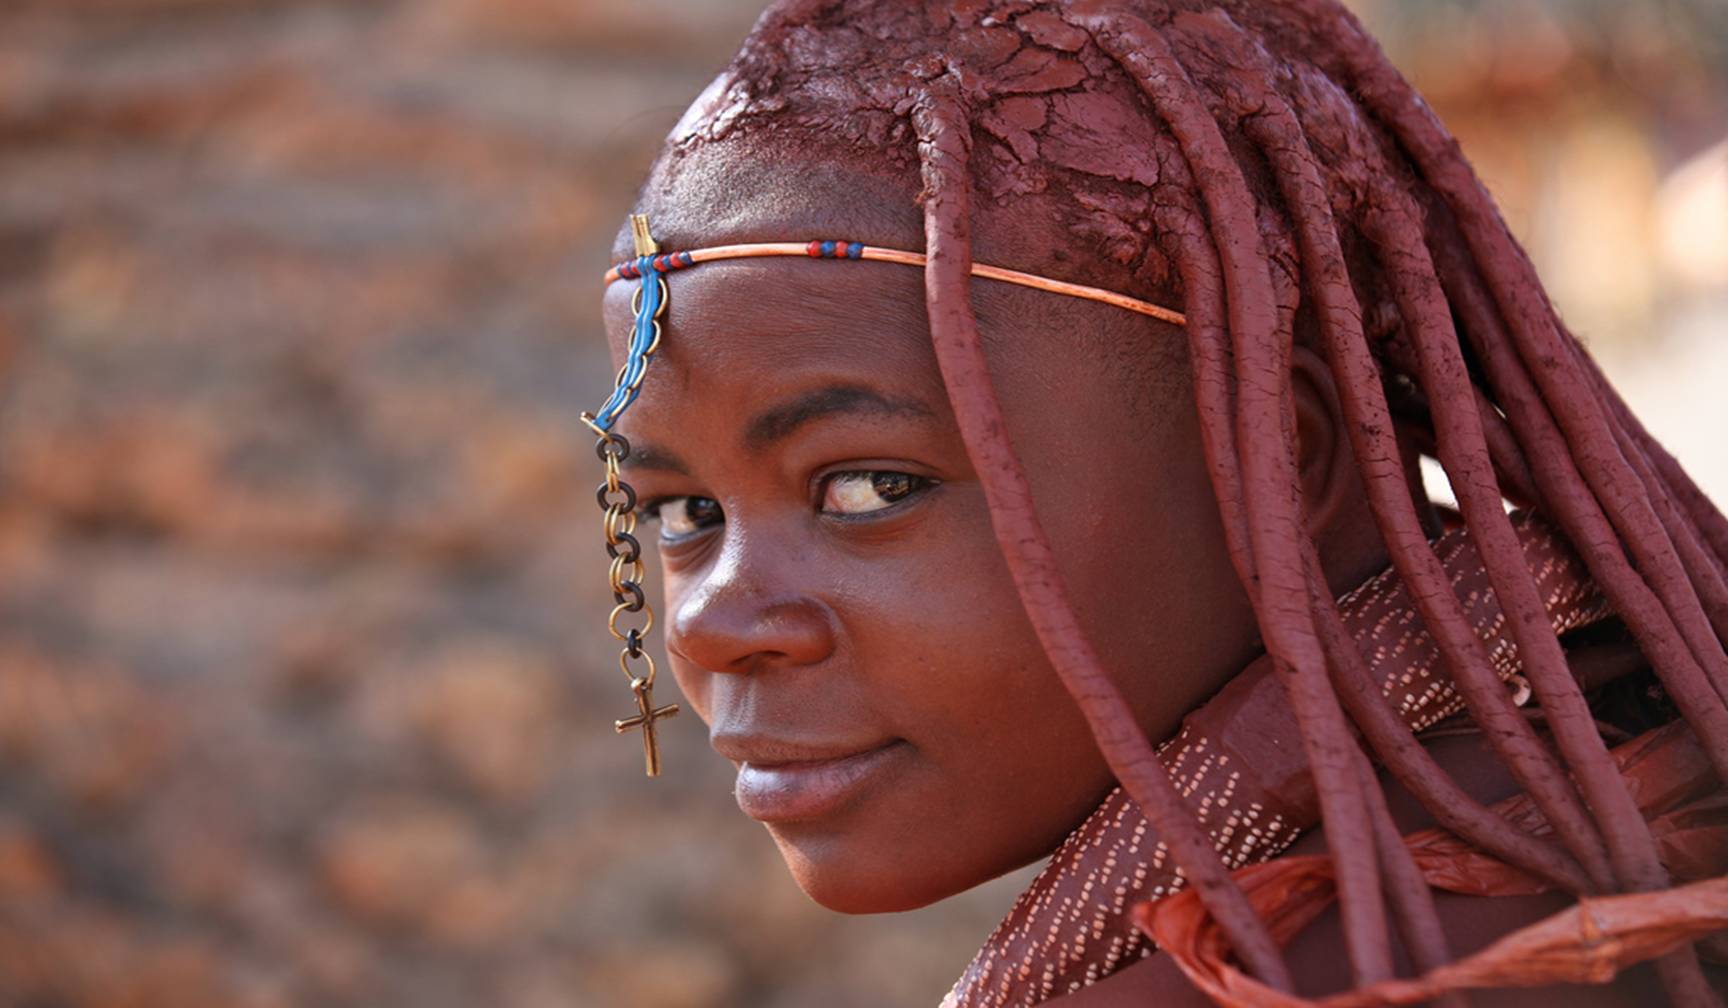 辛巴族的女人会在皮肤上涂一层红色的颜料,整个皮肤完全呈现出红颜色